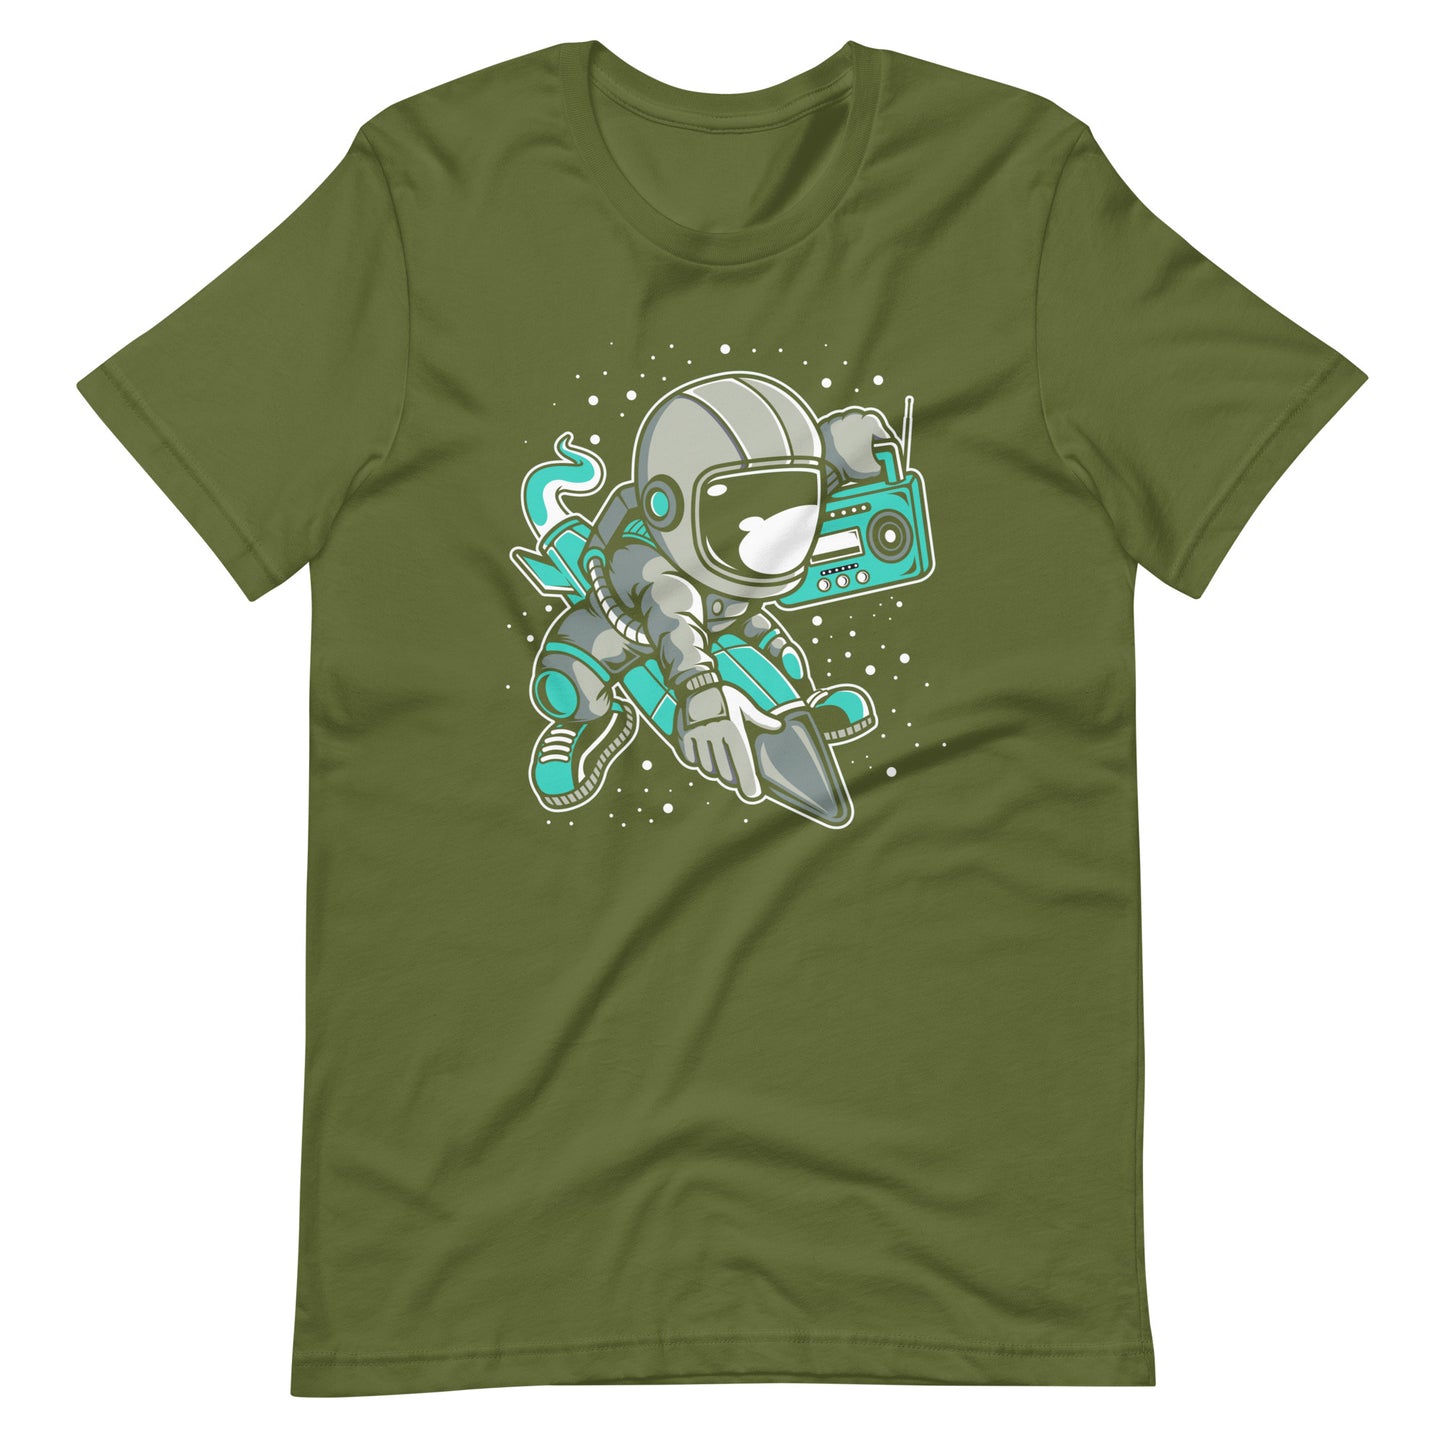 Astronaut Rocket - Men's t-shirt - Olive Front